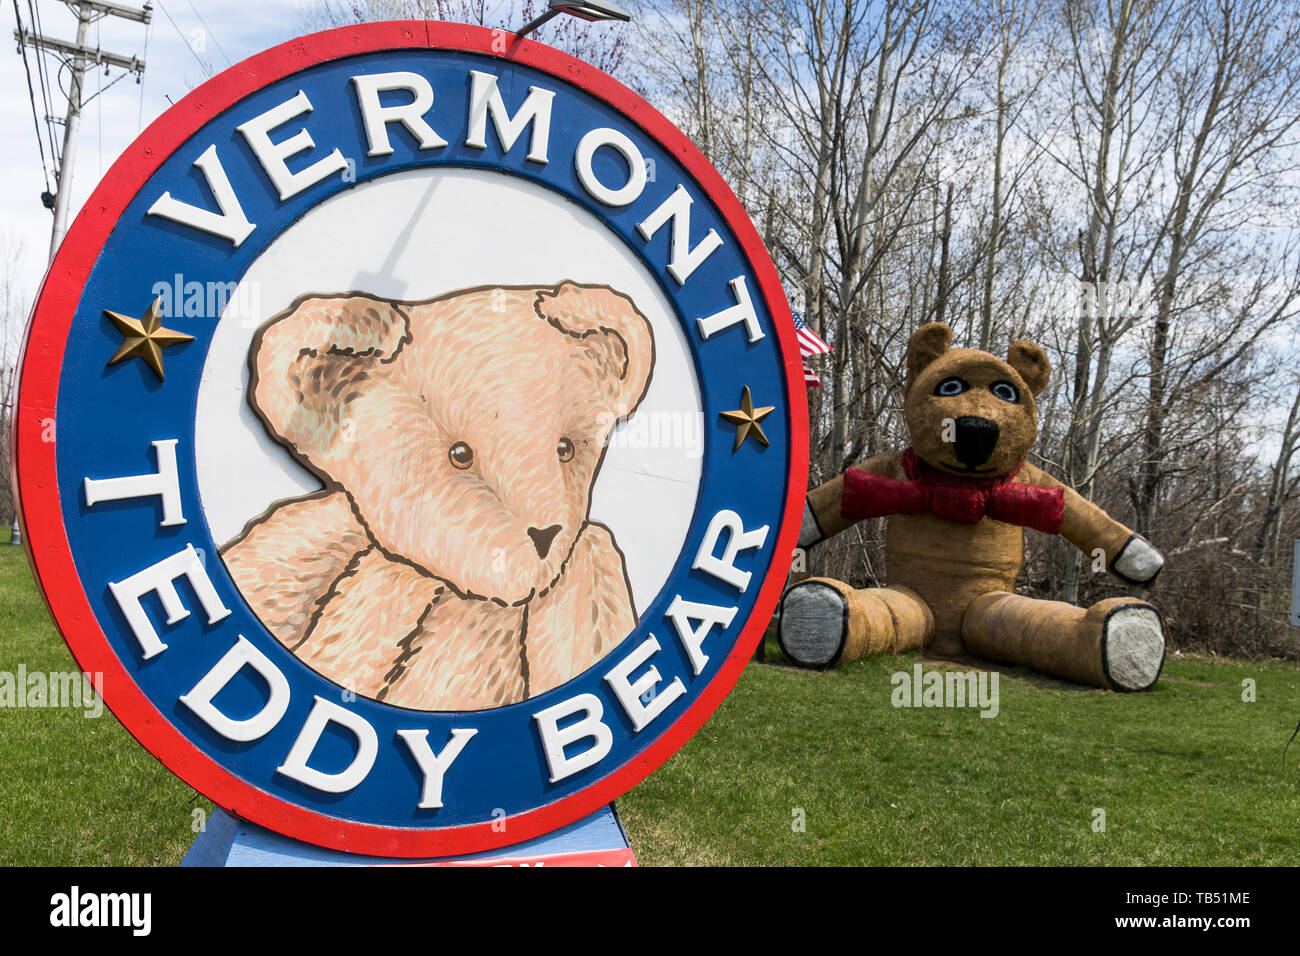 vermont teddy bear co